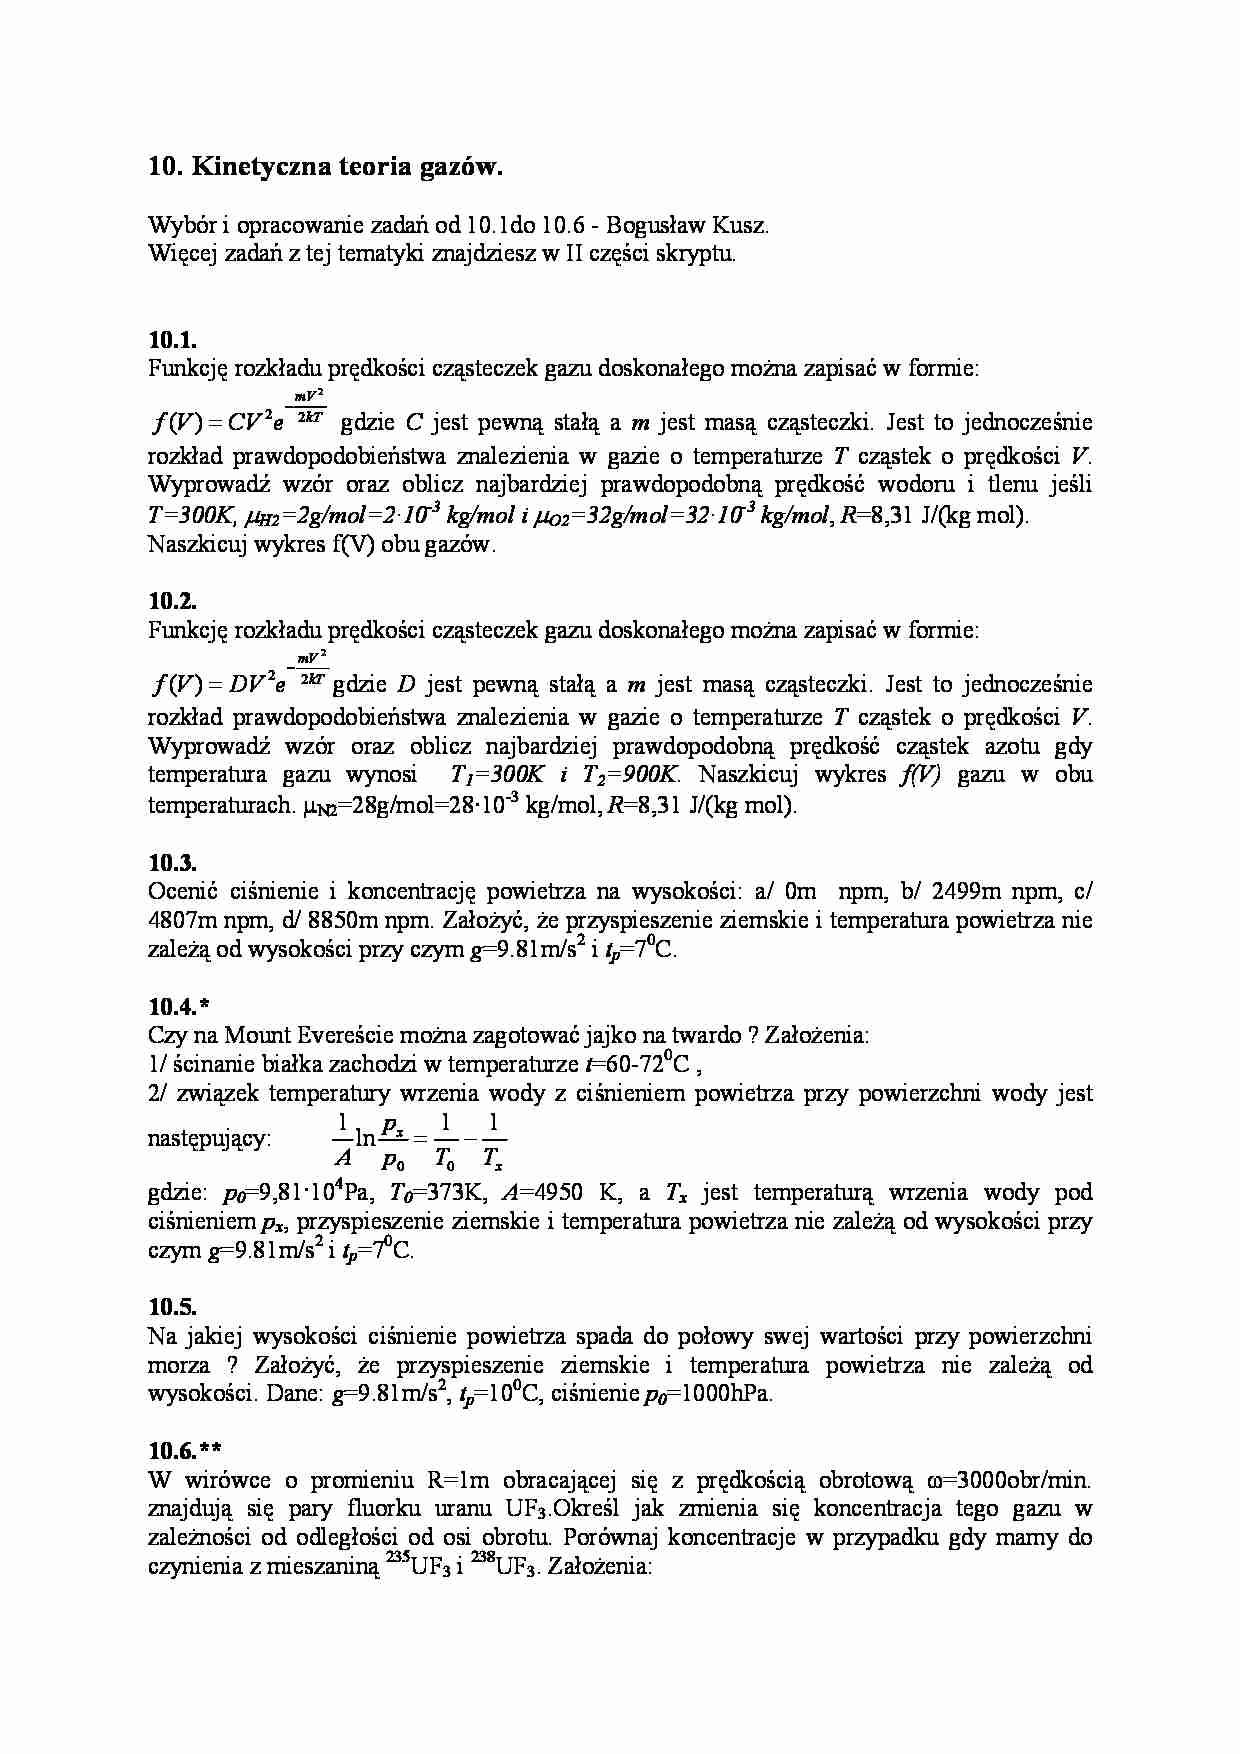 Kinetyczna teoria gazów-zadania - strona 1